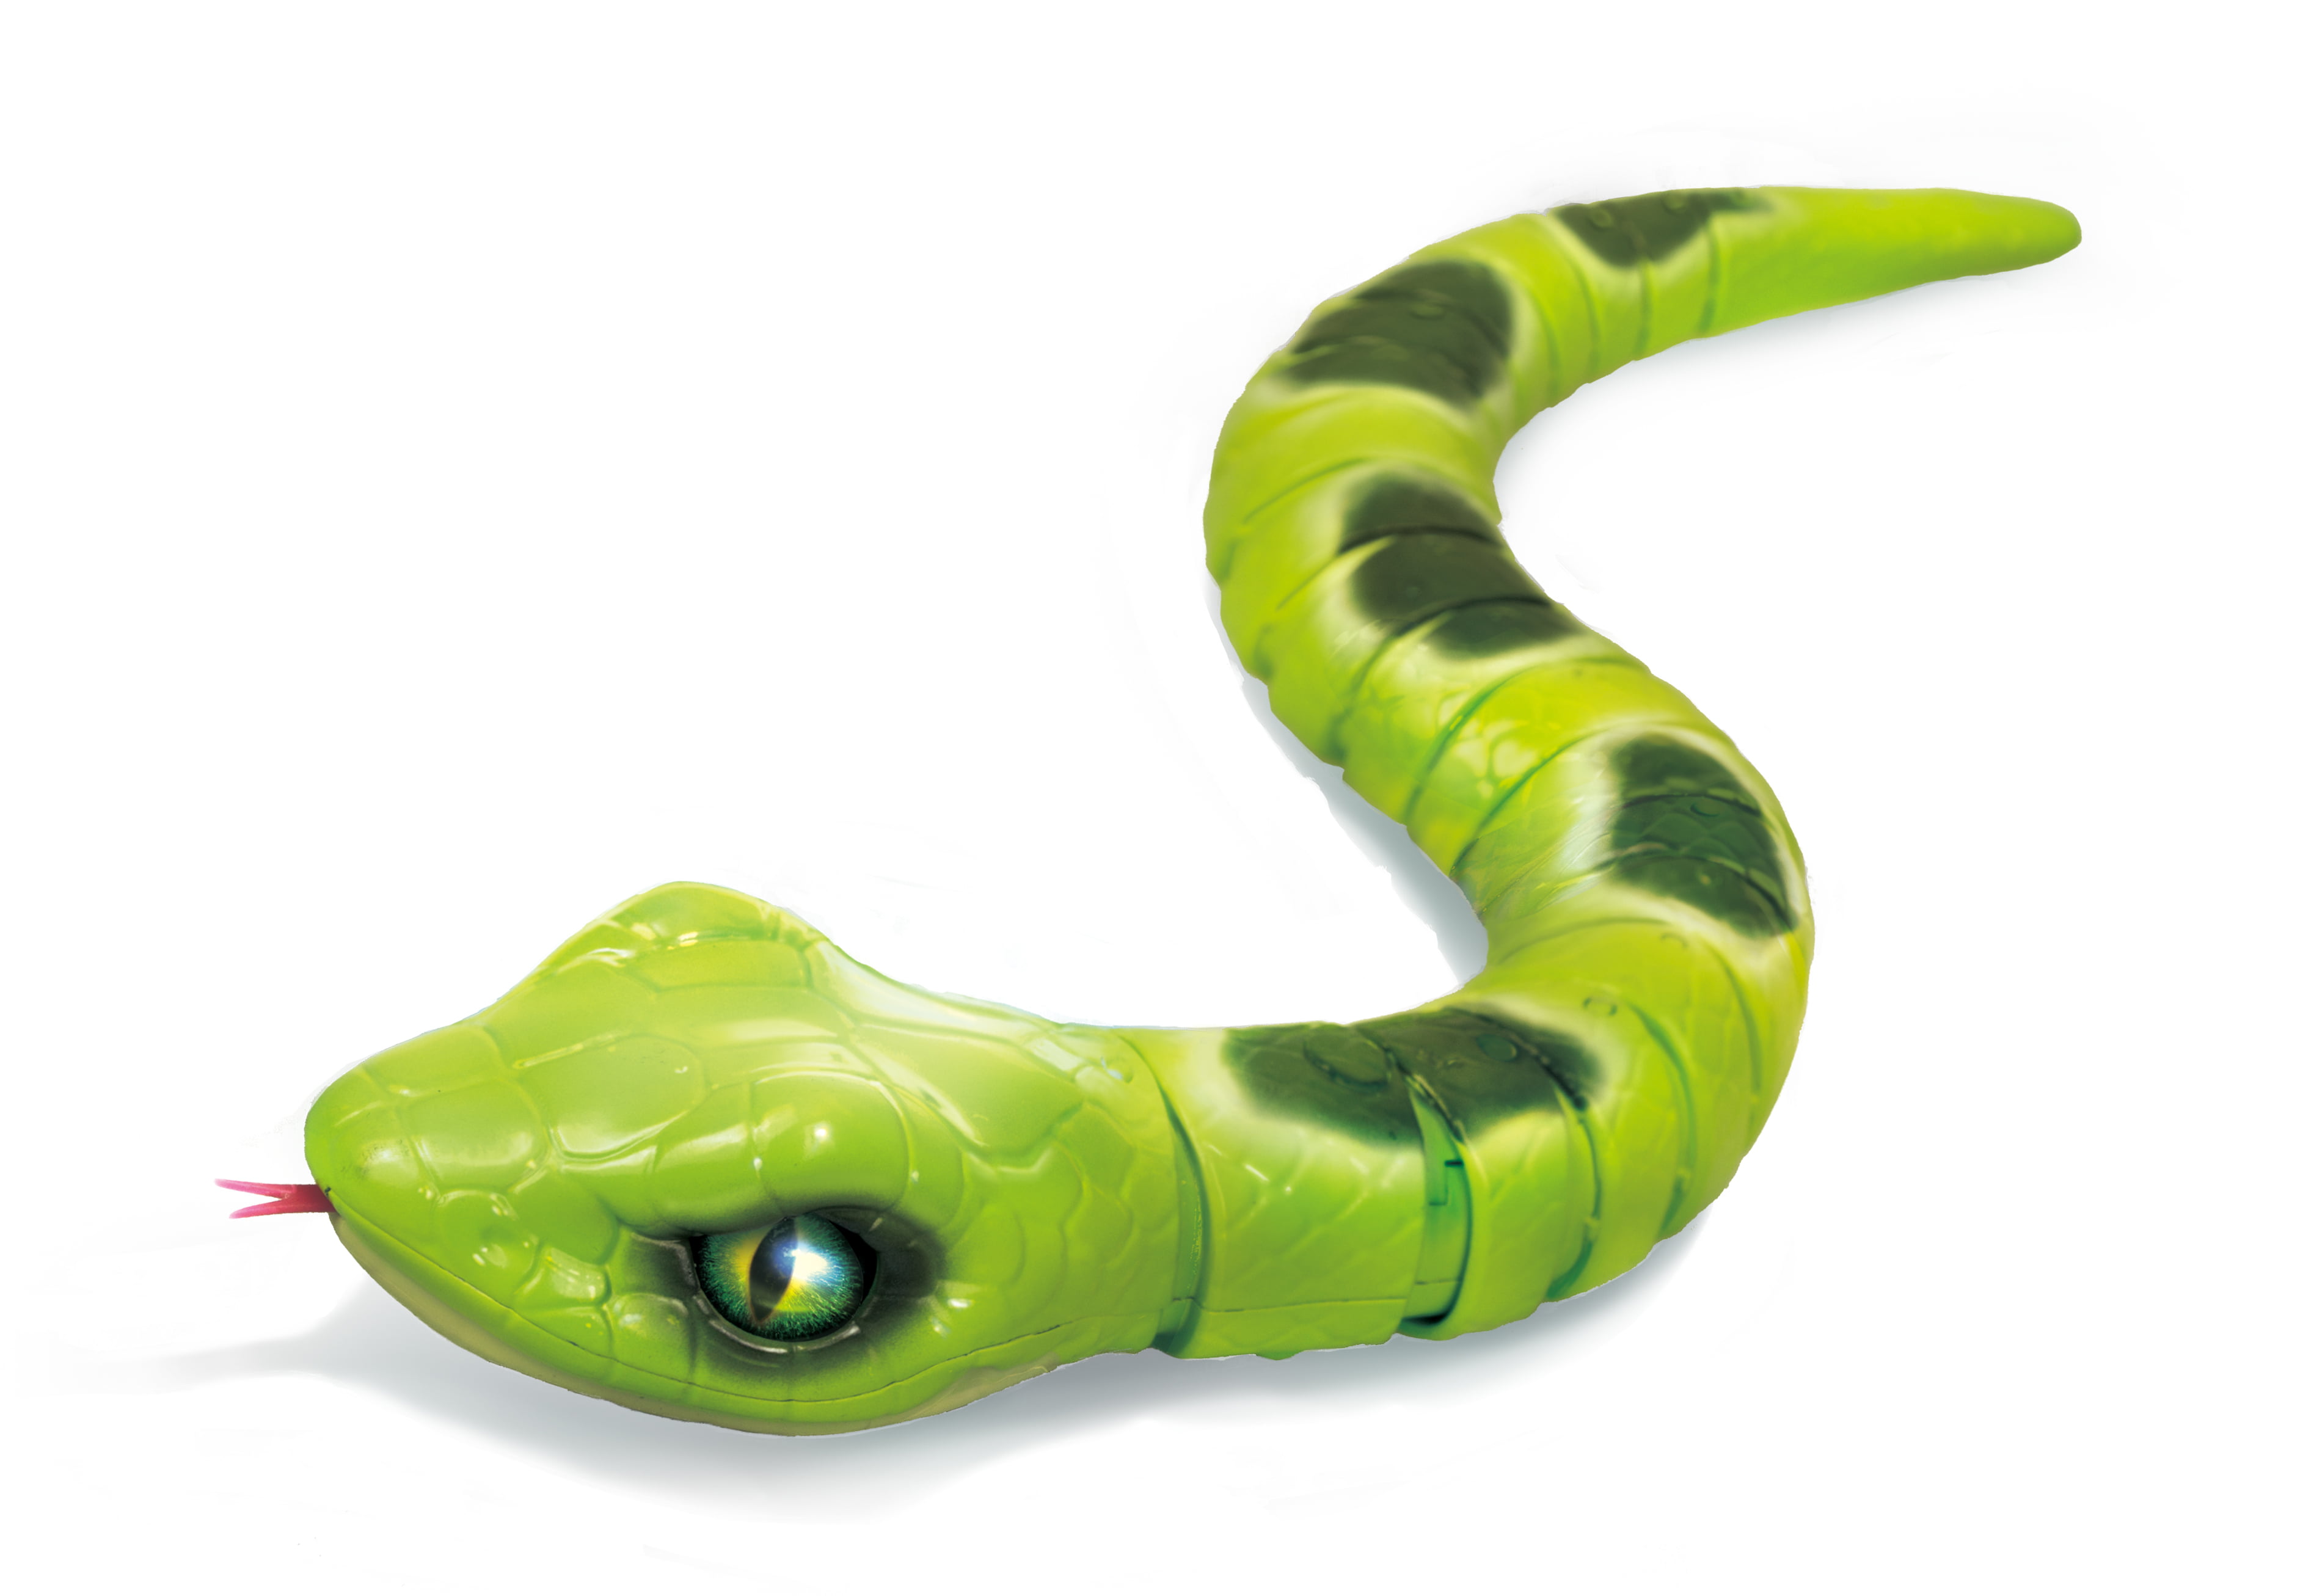 Игрушка змея купить. Игрушка робо-змея ROBOALIVE. Zuru Robo Alive змея (зеленый). РОБОЗМЕЯ Zuru т10996 красная. РОБОЗМЕЯ Zuru т10995 зеленая.